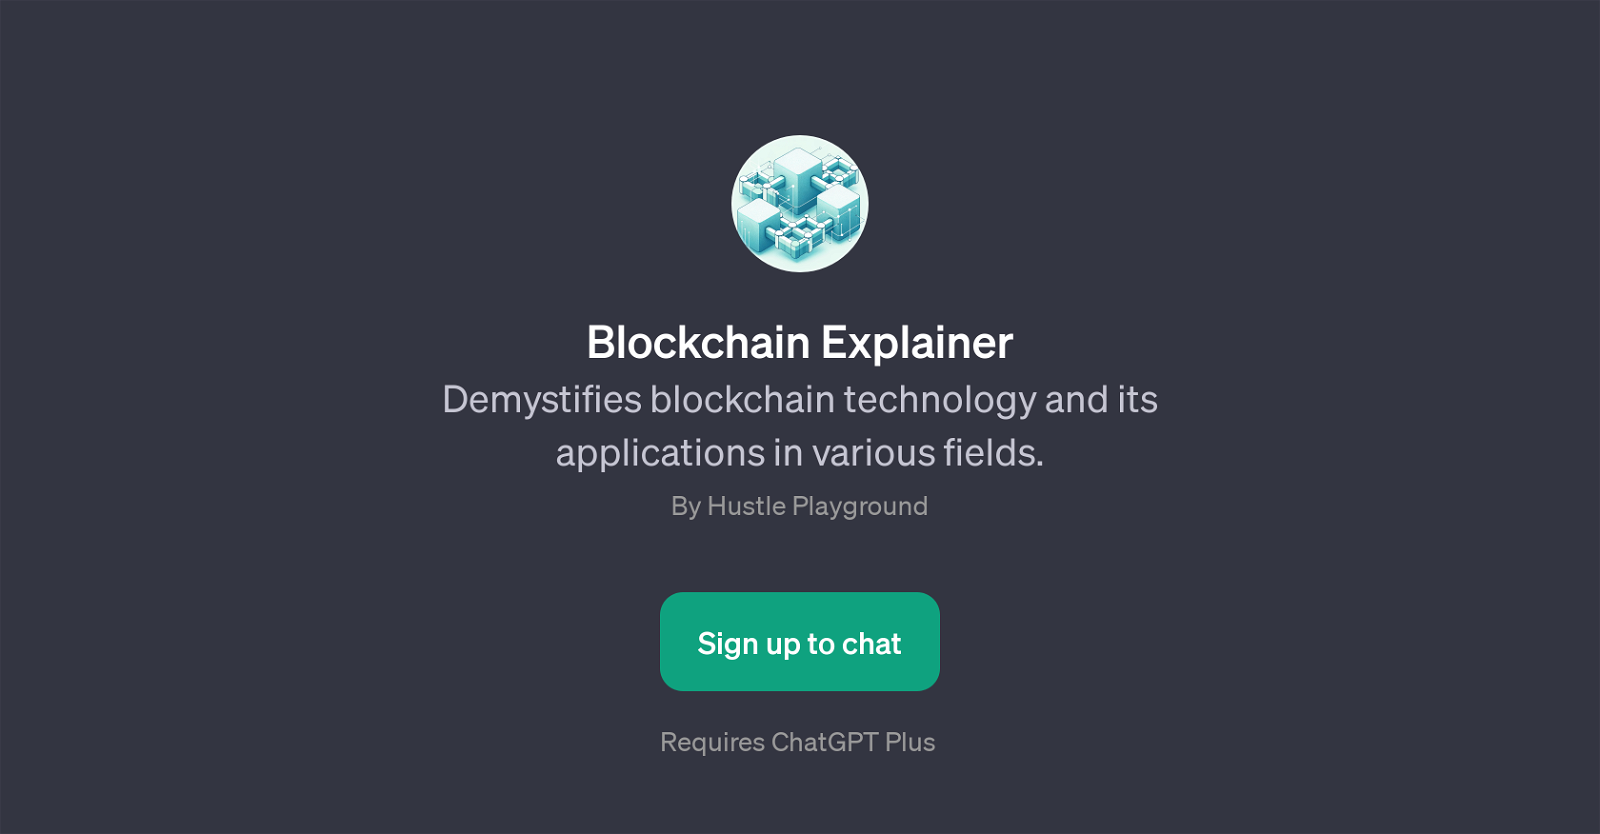 Blockchain Explainer website